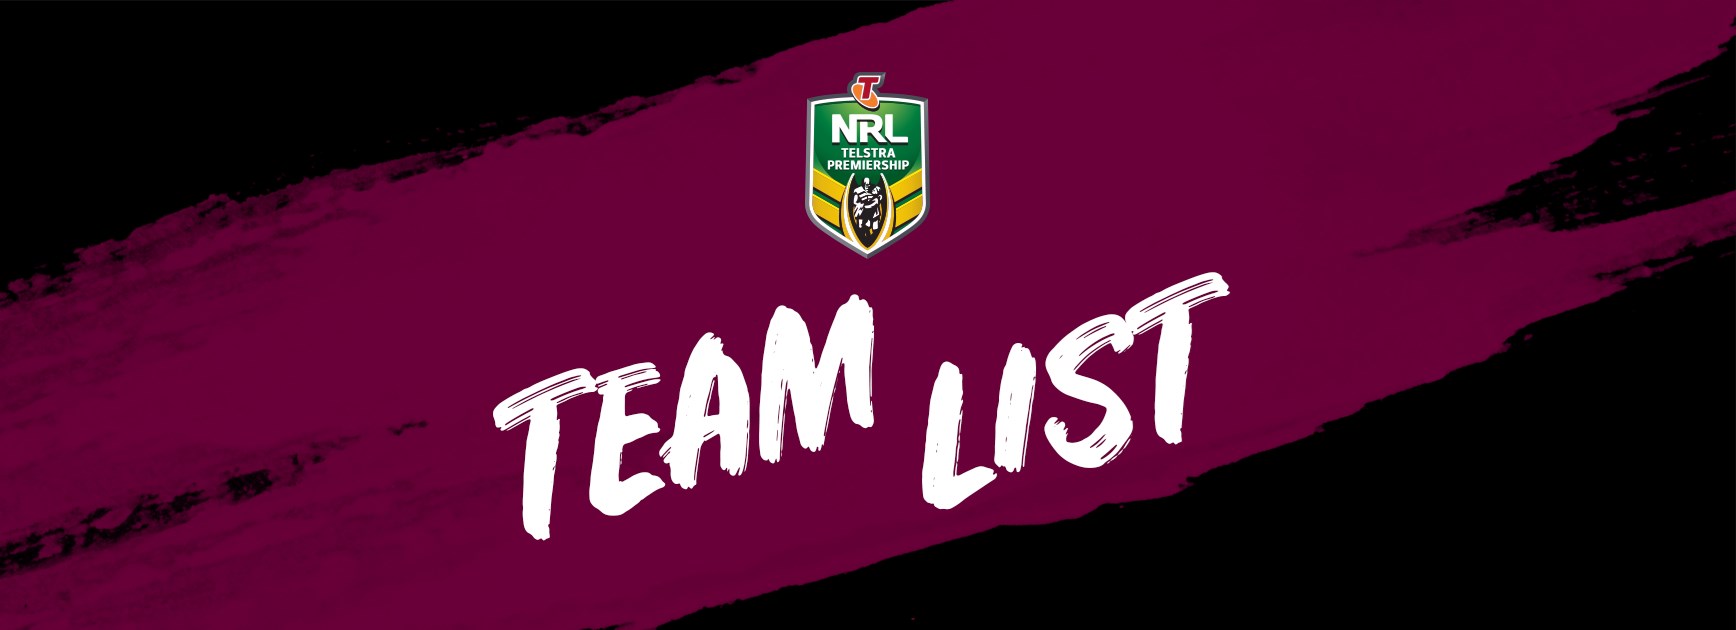 NRL Team List - Round 6